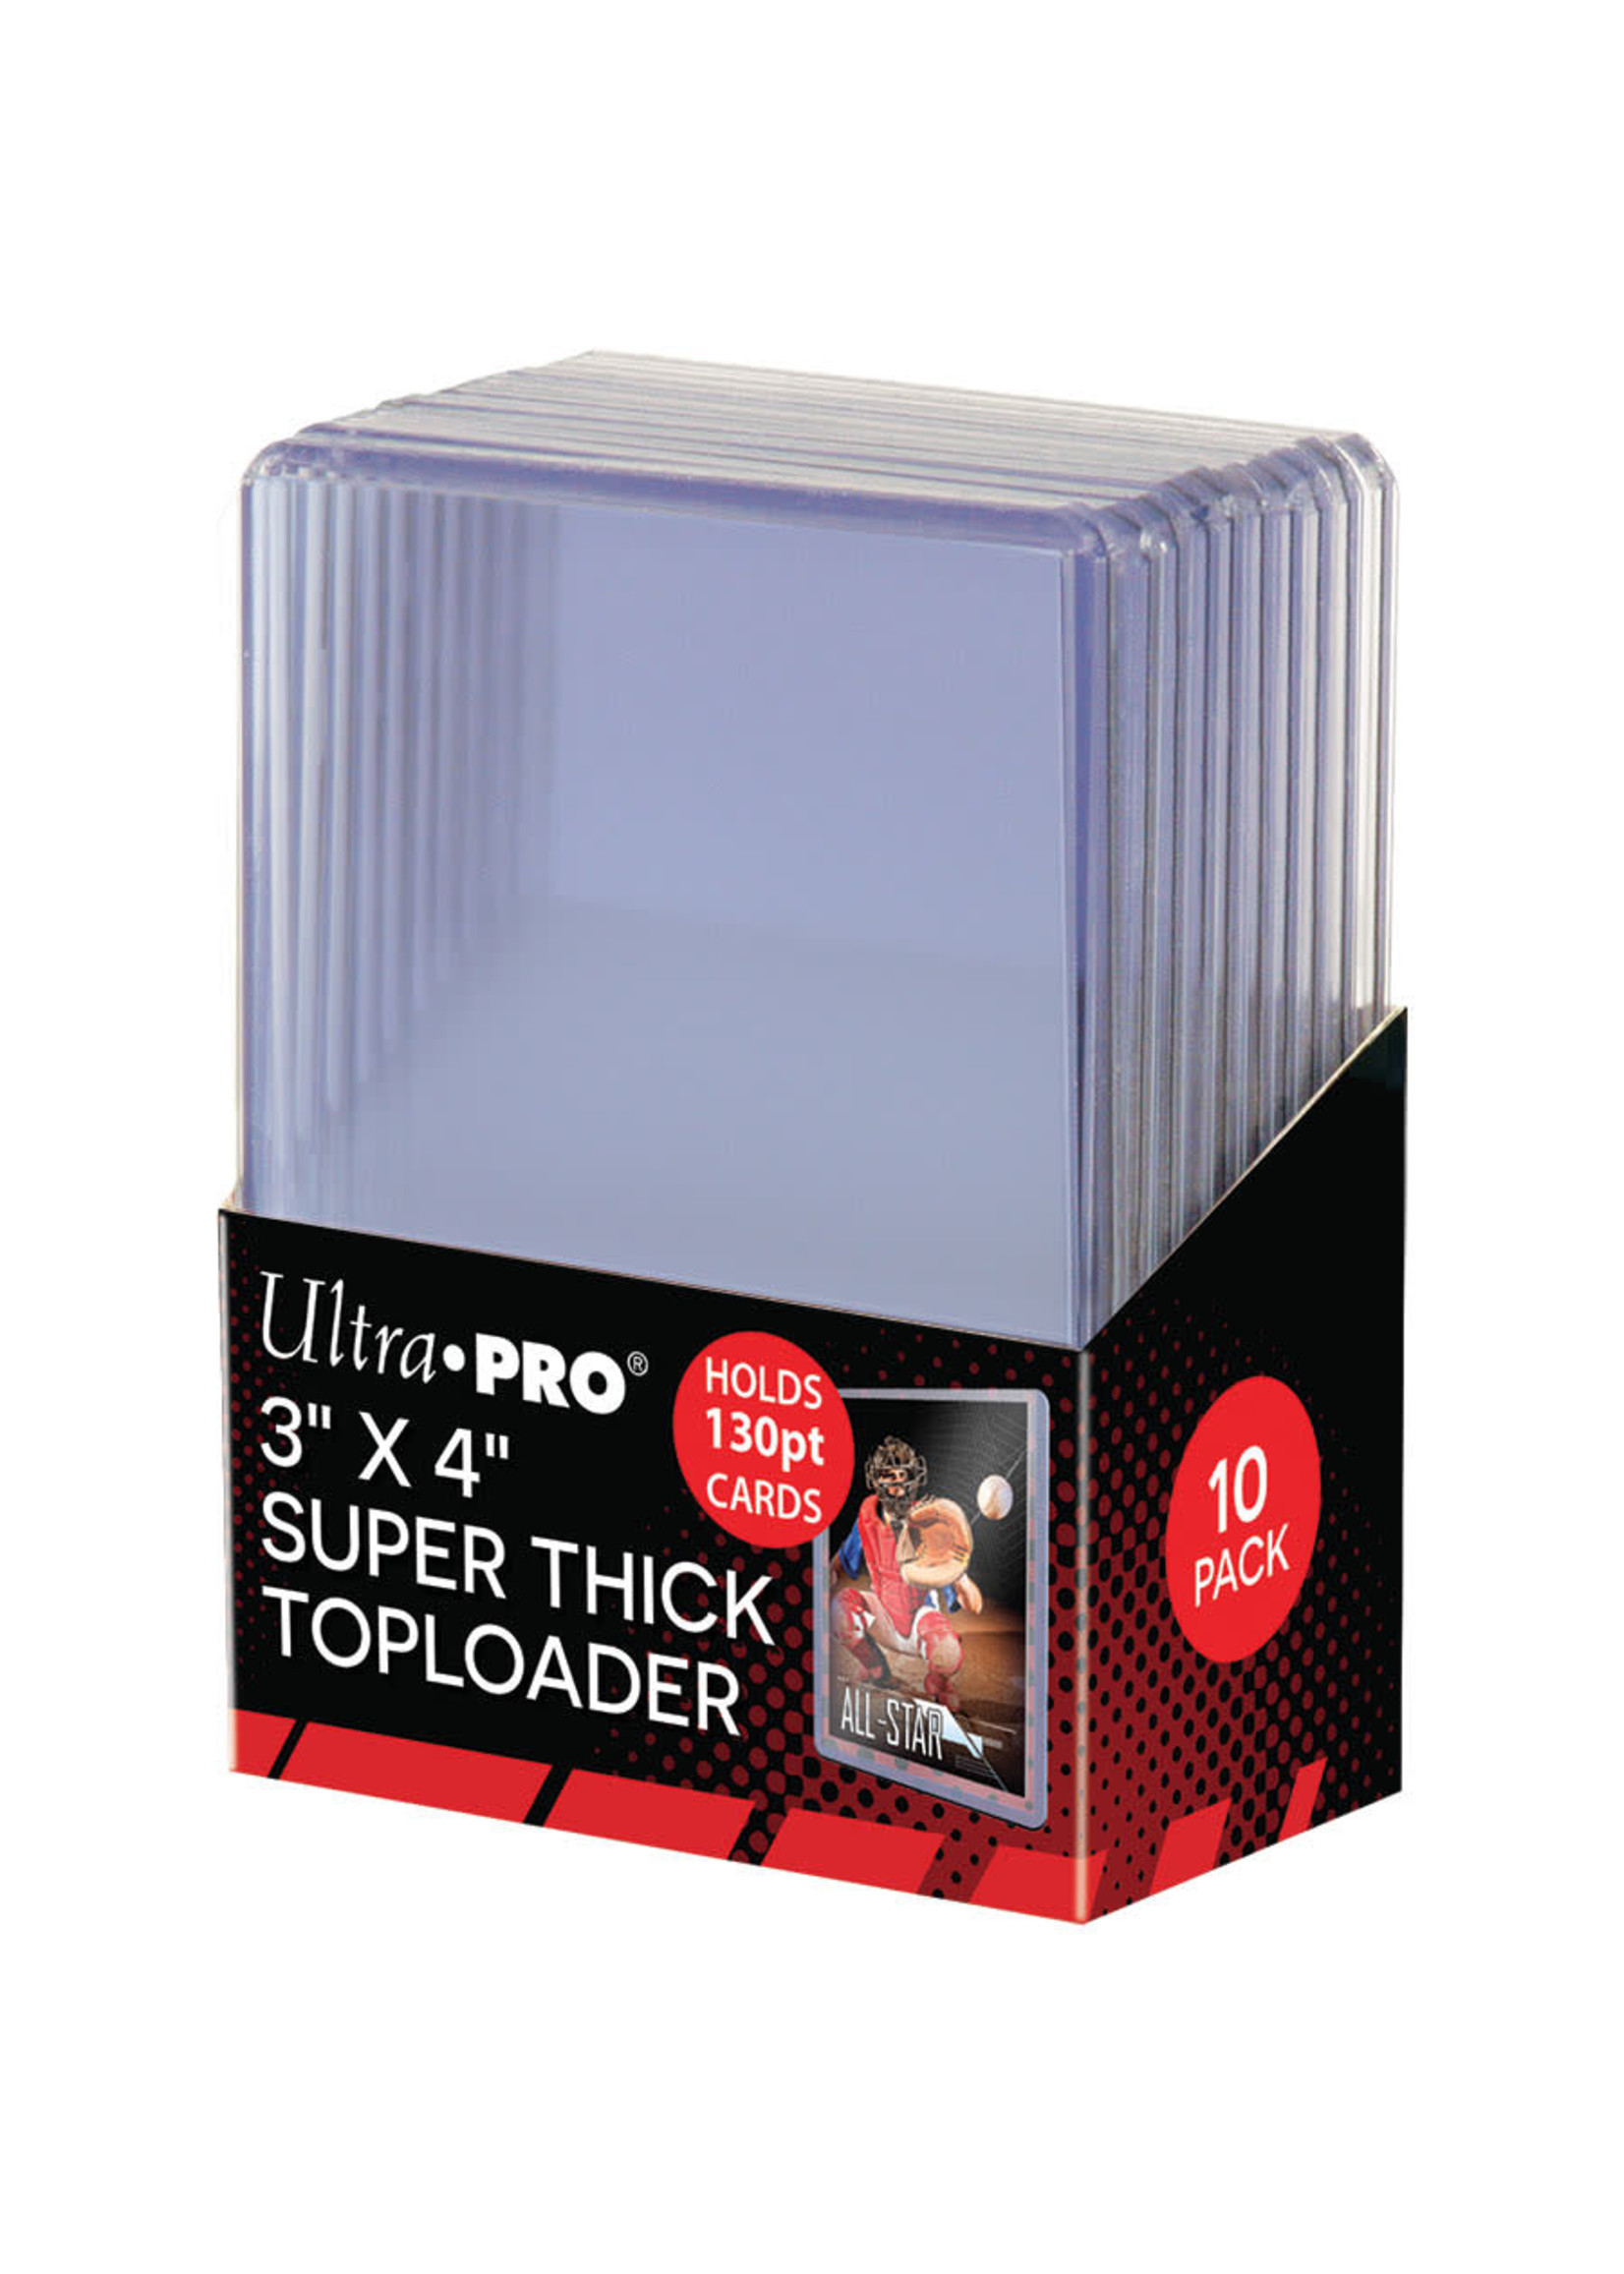 Ultra Pro Super Thick Toploader 130pt